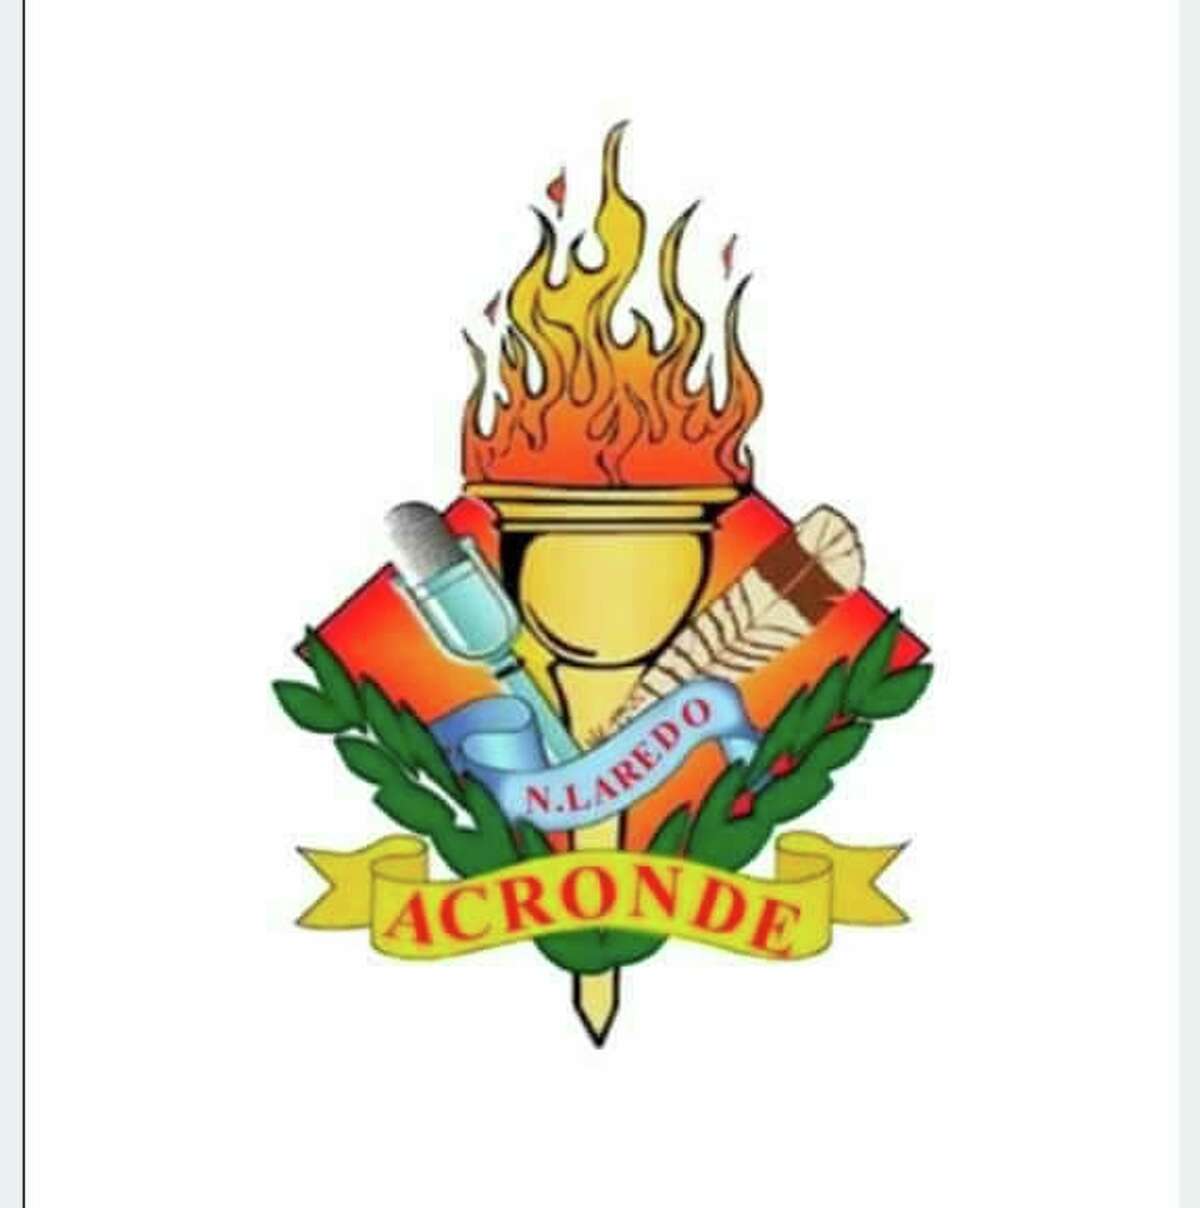 ACRONDE logo.